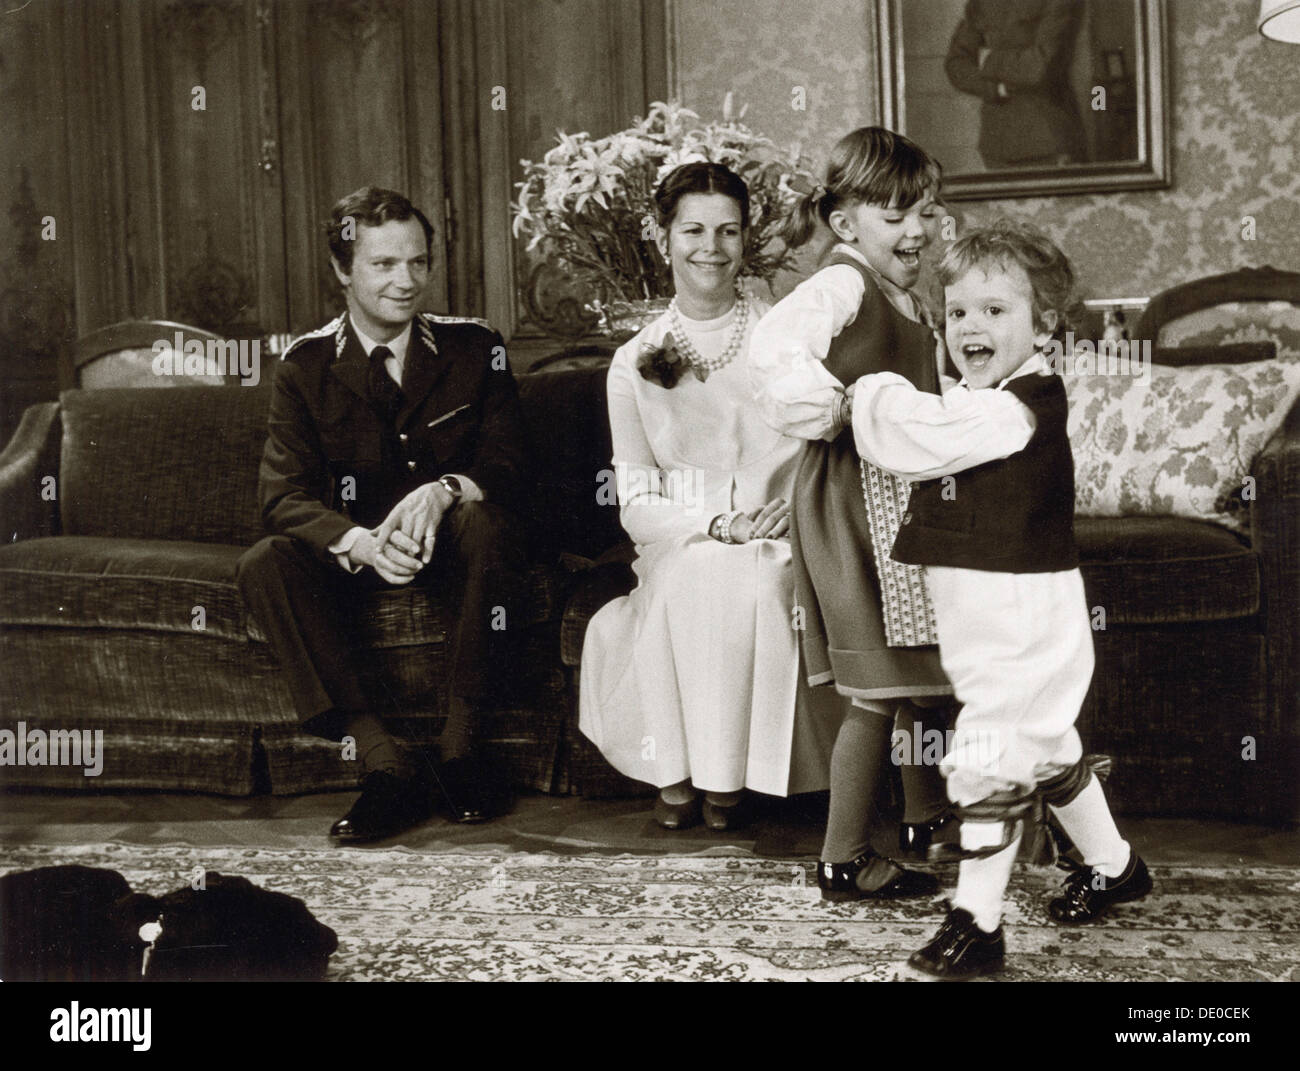 La famille royale Suédoise à leurs officiels de Noël photo shoot, 1981. Artiste : Inconnu Banque D'Images